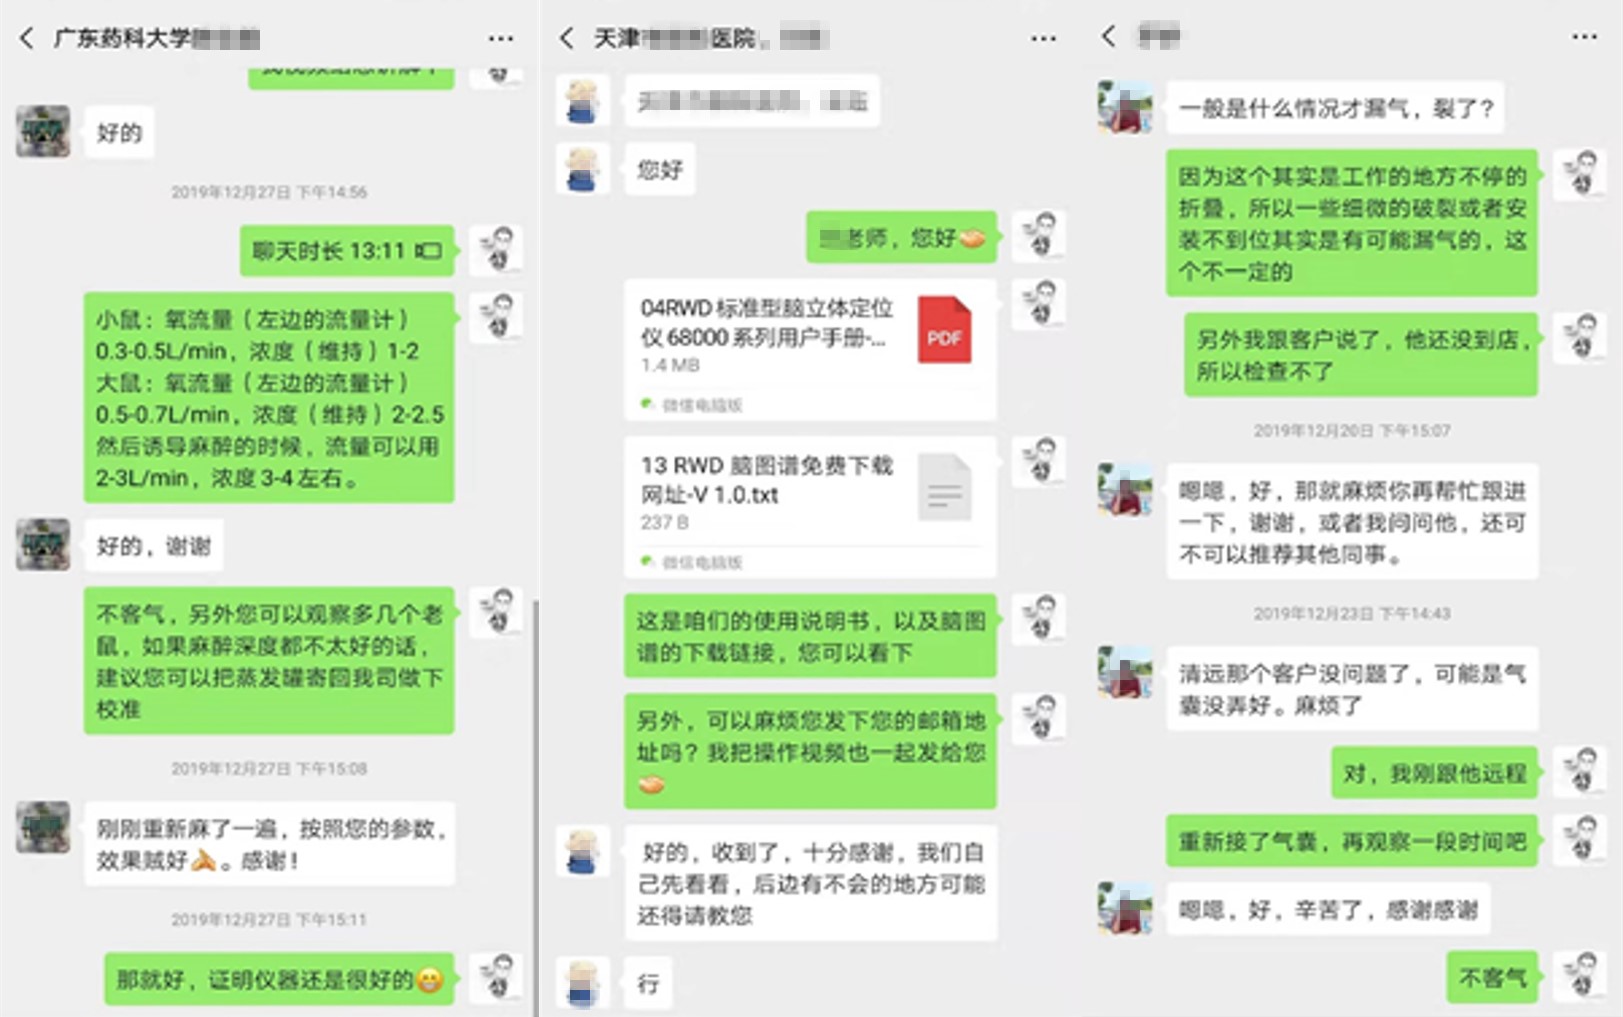 2-聊天记录源自技术工程师张海权.jpg